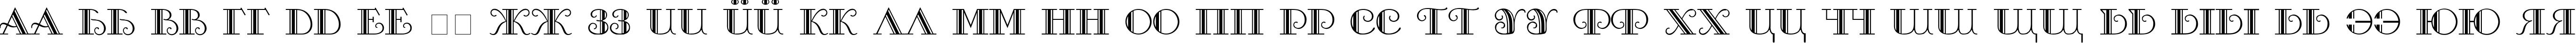 Пример написания русского алфавита шрифтом Sanasoft Galleria.kz